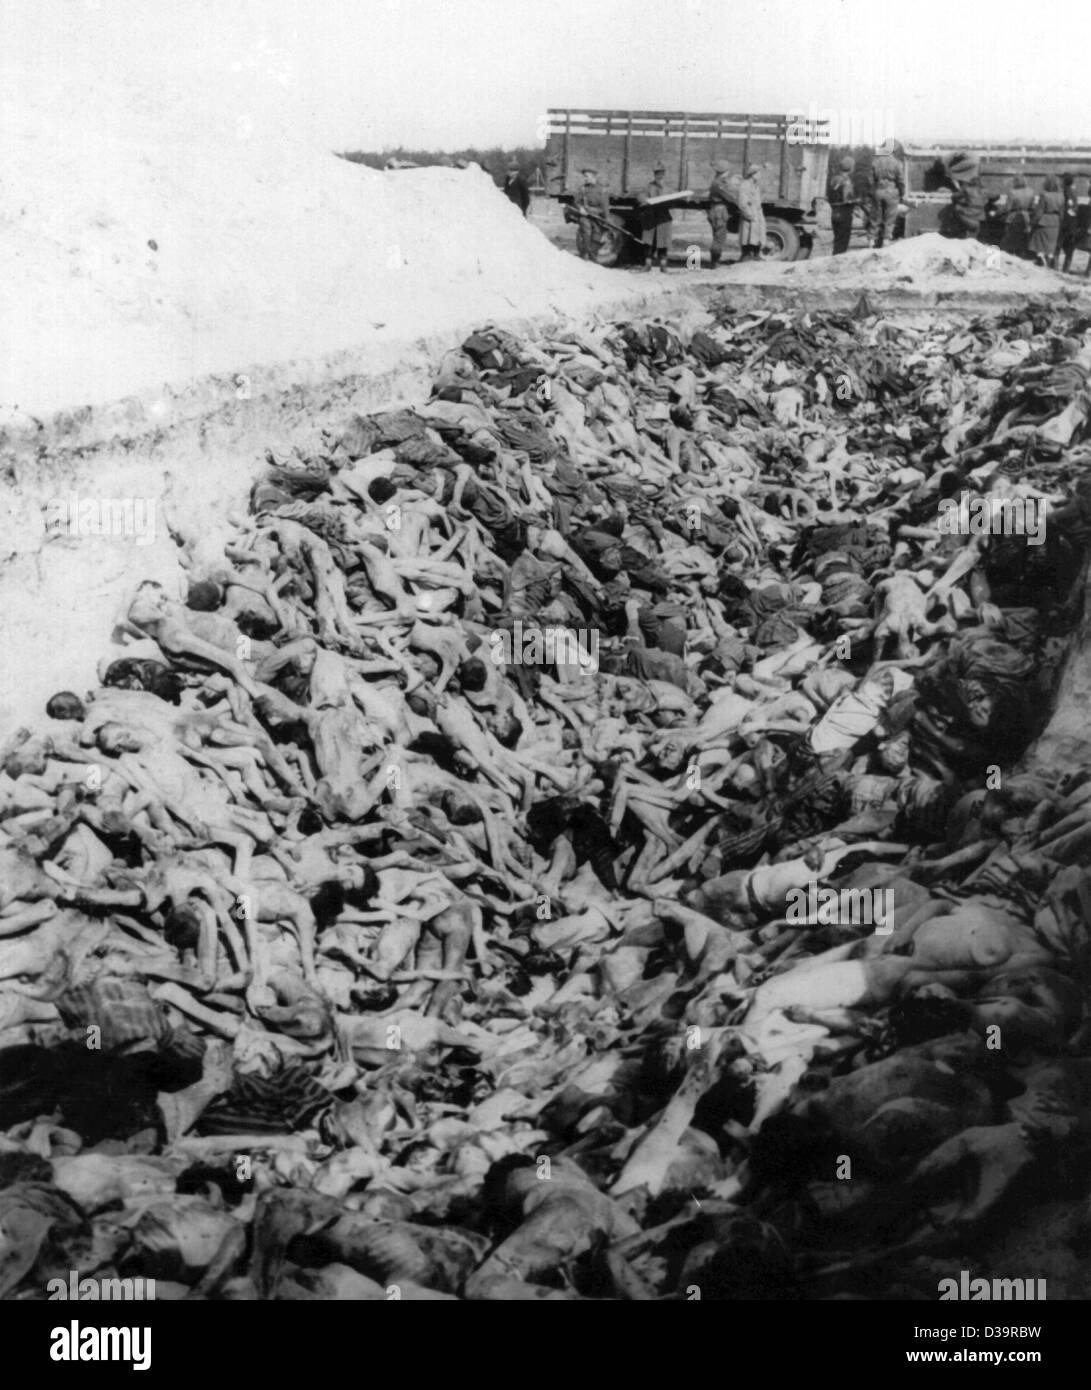 (Dpa file) - i corpi di centinaia di prigionieri che sono state uccise o sono morti di fame o di contagio sono giacenti in una fossa comune presso l'ex campo di concentramento nazista Bergen-Belsen vicino a Celle, Germania (non datato). Più di 60.000 persone hanno perso la vita nel campeggio durante il Terzo Reich. Foto Stock